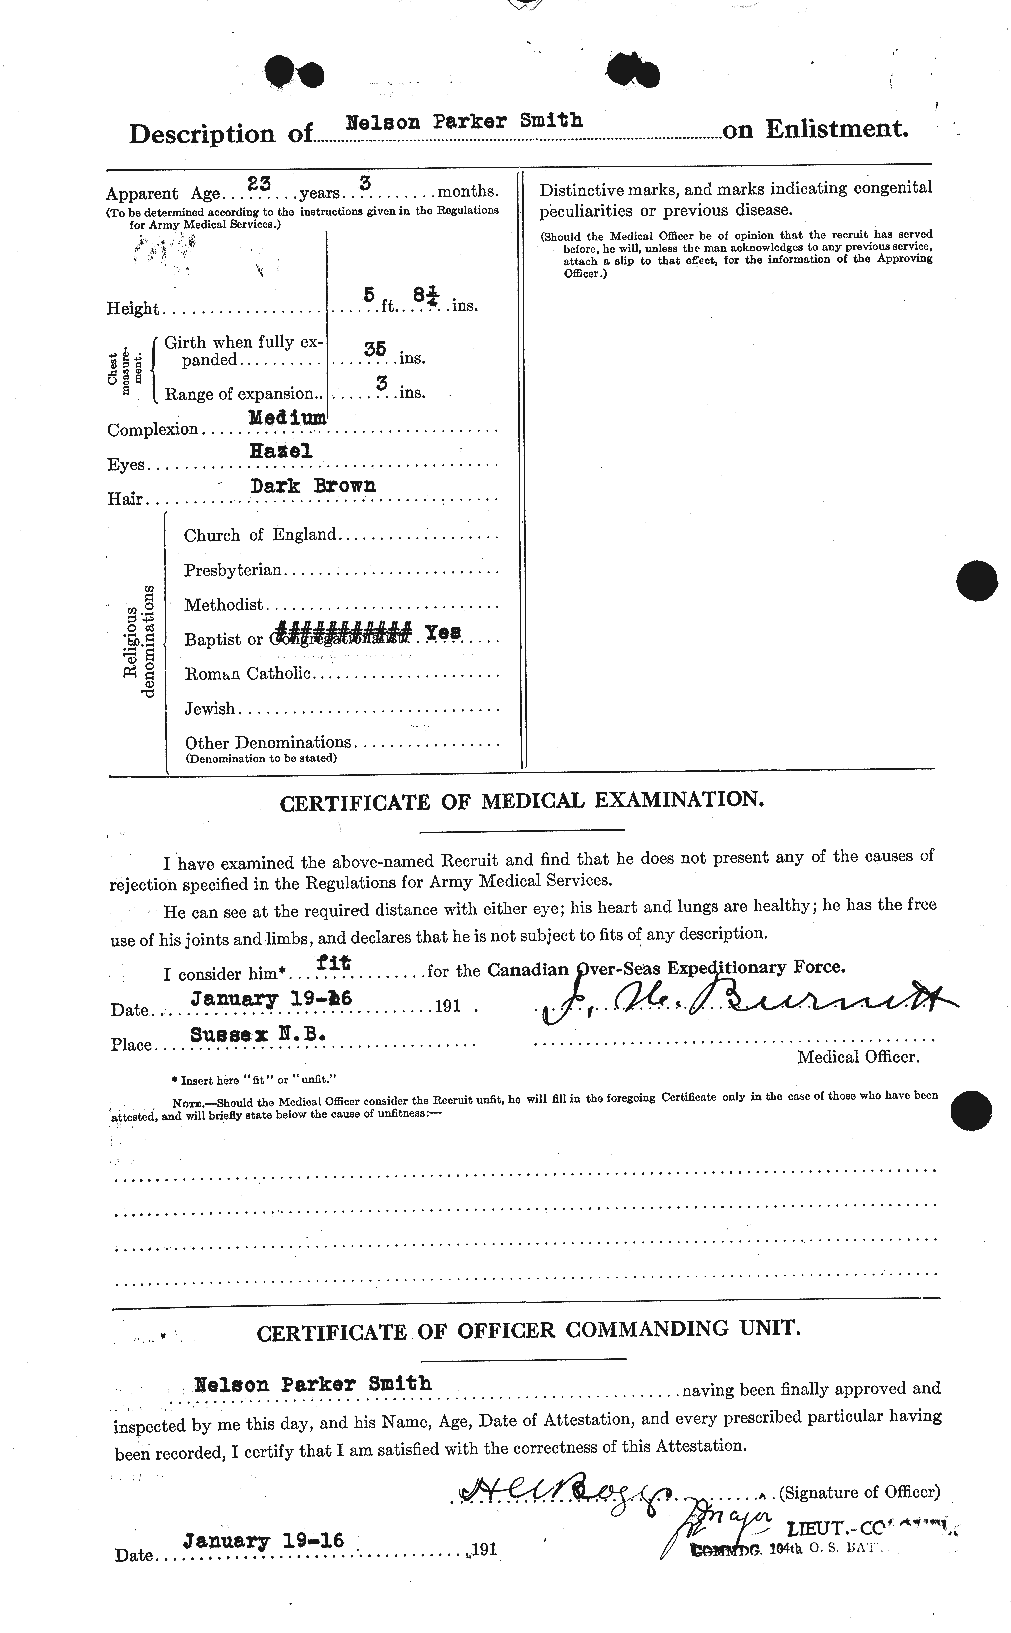 Dossiers du Personnel de la Première Guerre mondiale - CEC 104168b